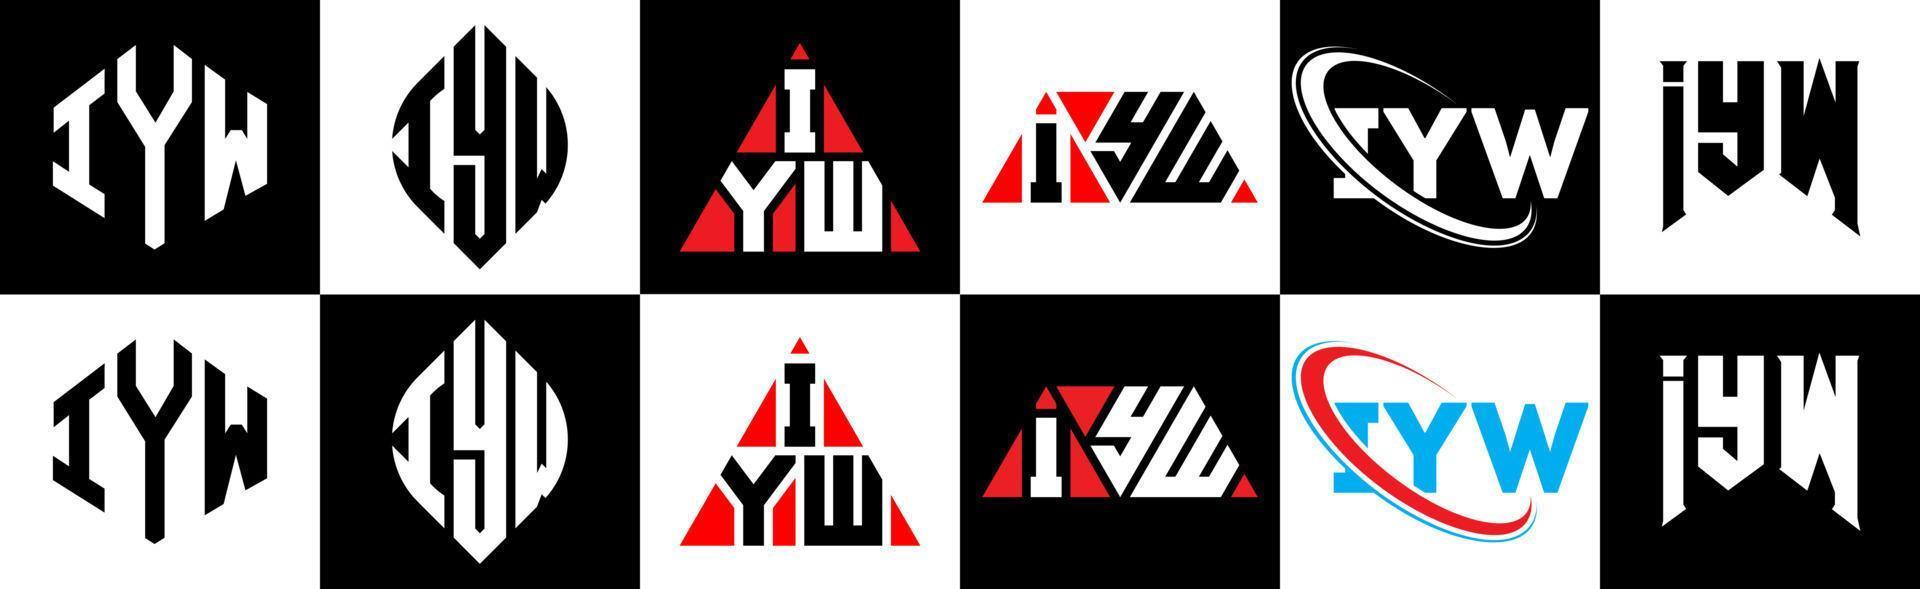 création de logo de lettre iyw en six styles. iyw polygone, cercle, triangle, hexagone, style plat et simple avec logo de lettre de variation de couleur noir et blanc dans un plan de travail. iyw logo minimaliste et classique vecteur